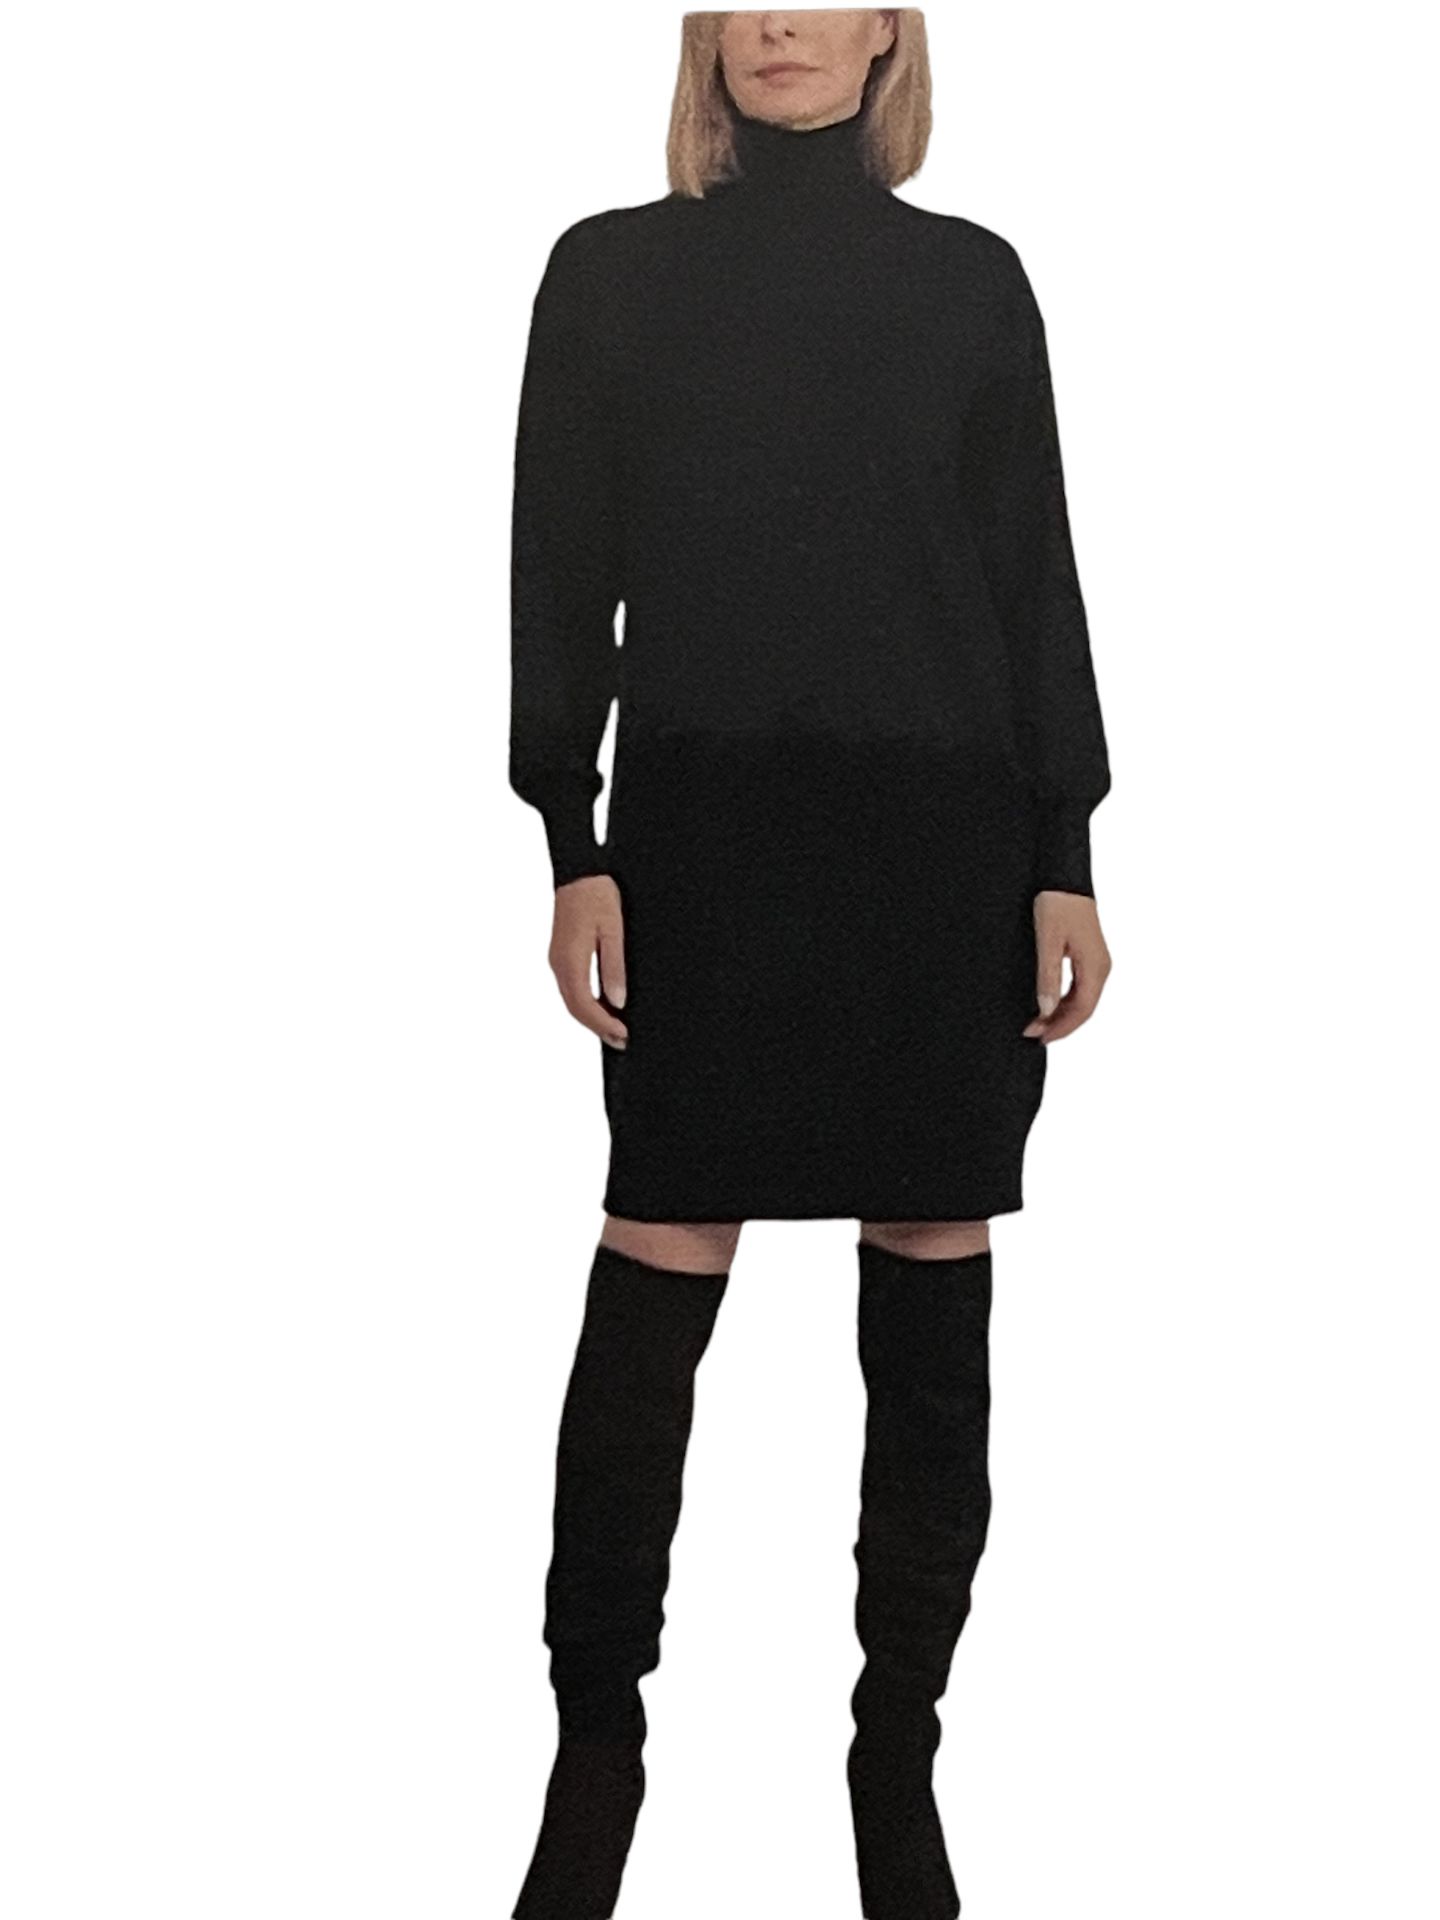 Designer Badgley Mischka Lightweight Fine Knitted Stretchy Jumper Dress UK 14L RRP £17.99 - Image 4 of 8